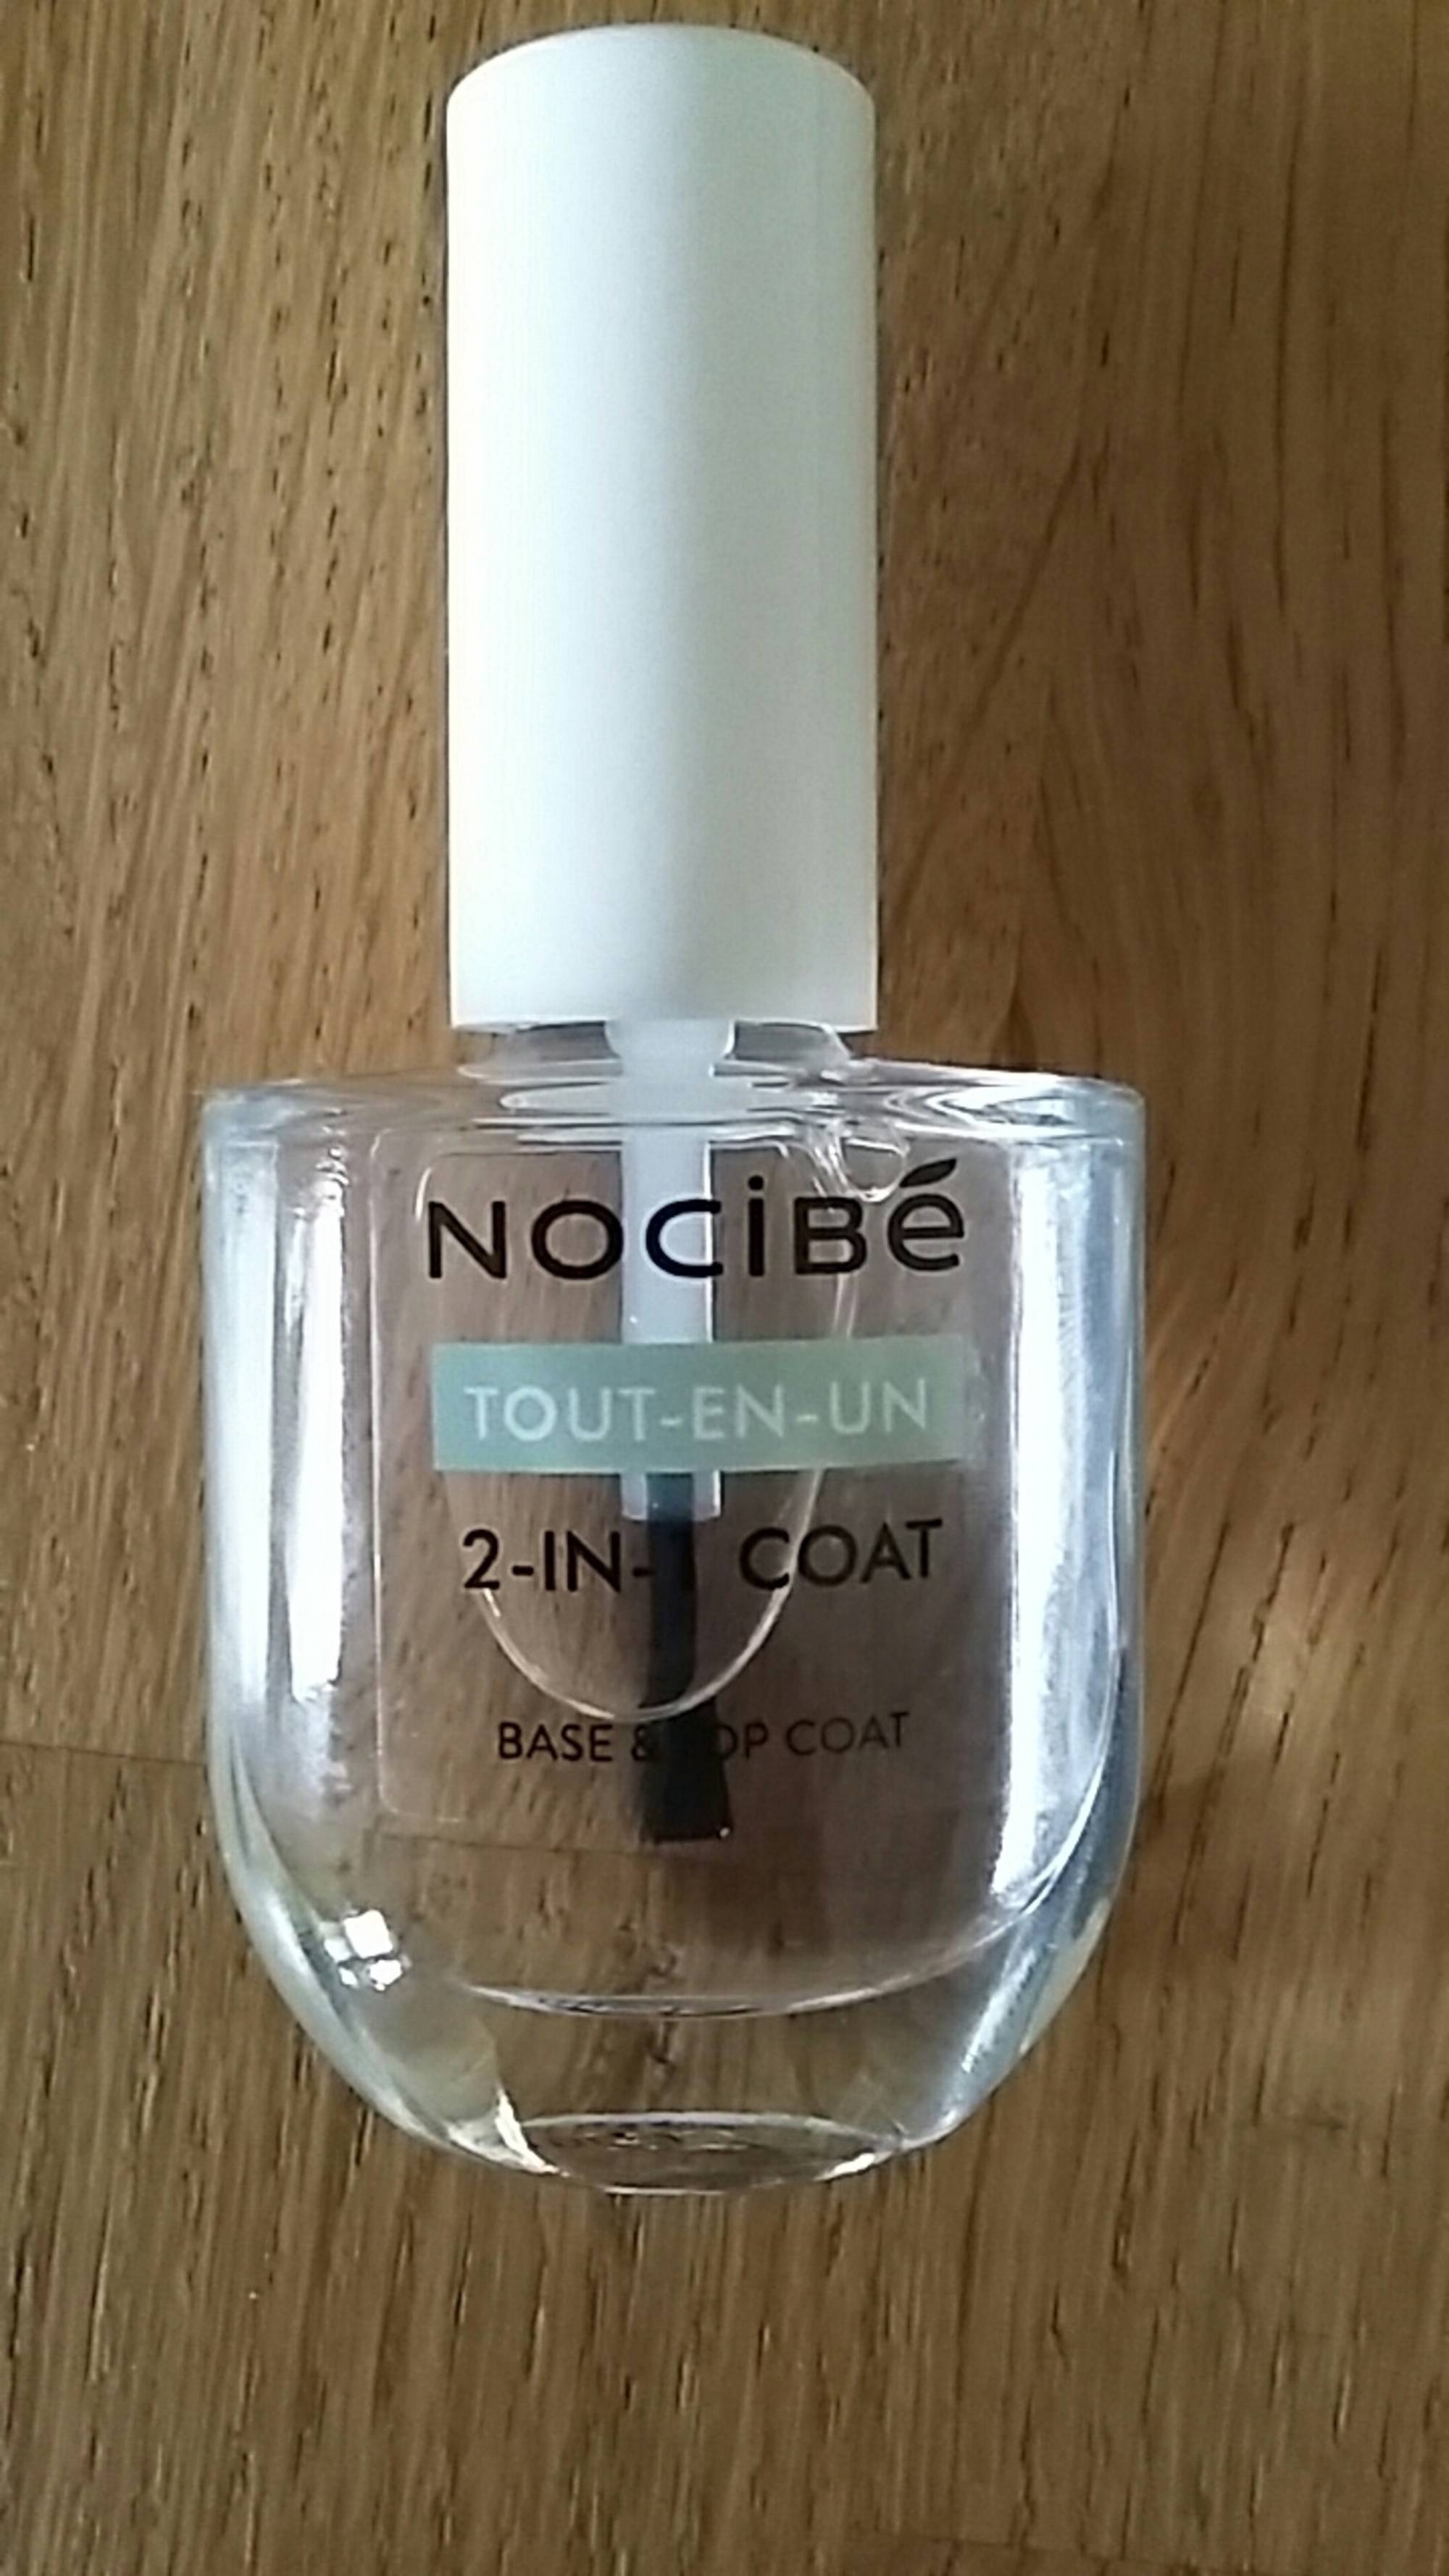 NOCIBÉ - 2 in 1 Coat - Base & top coat